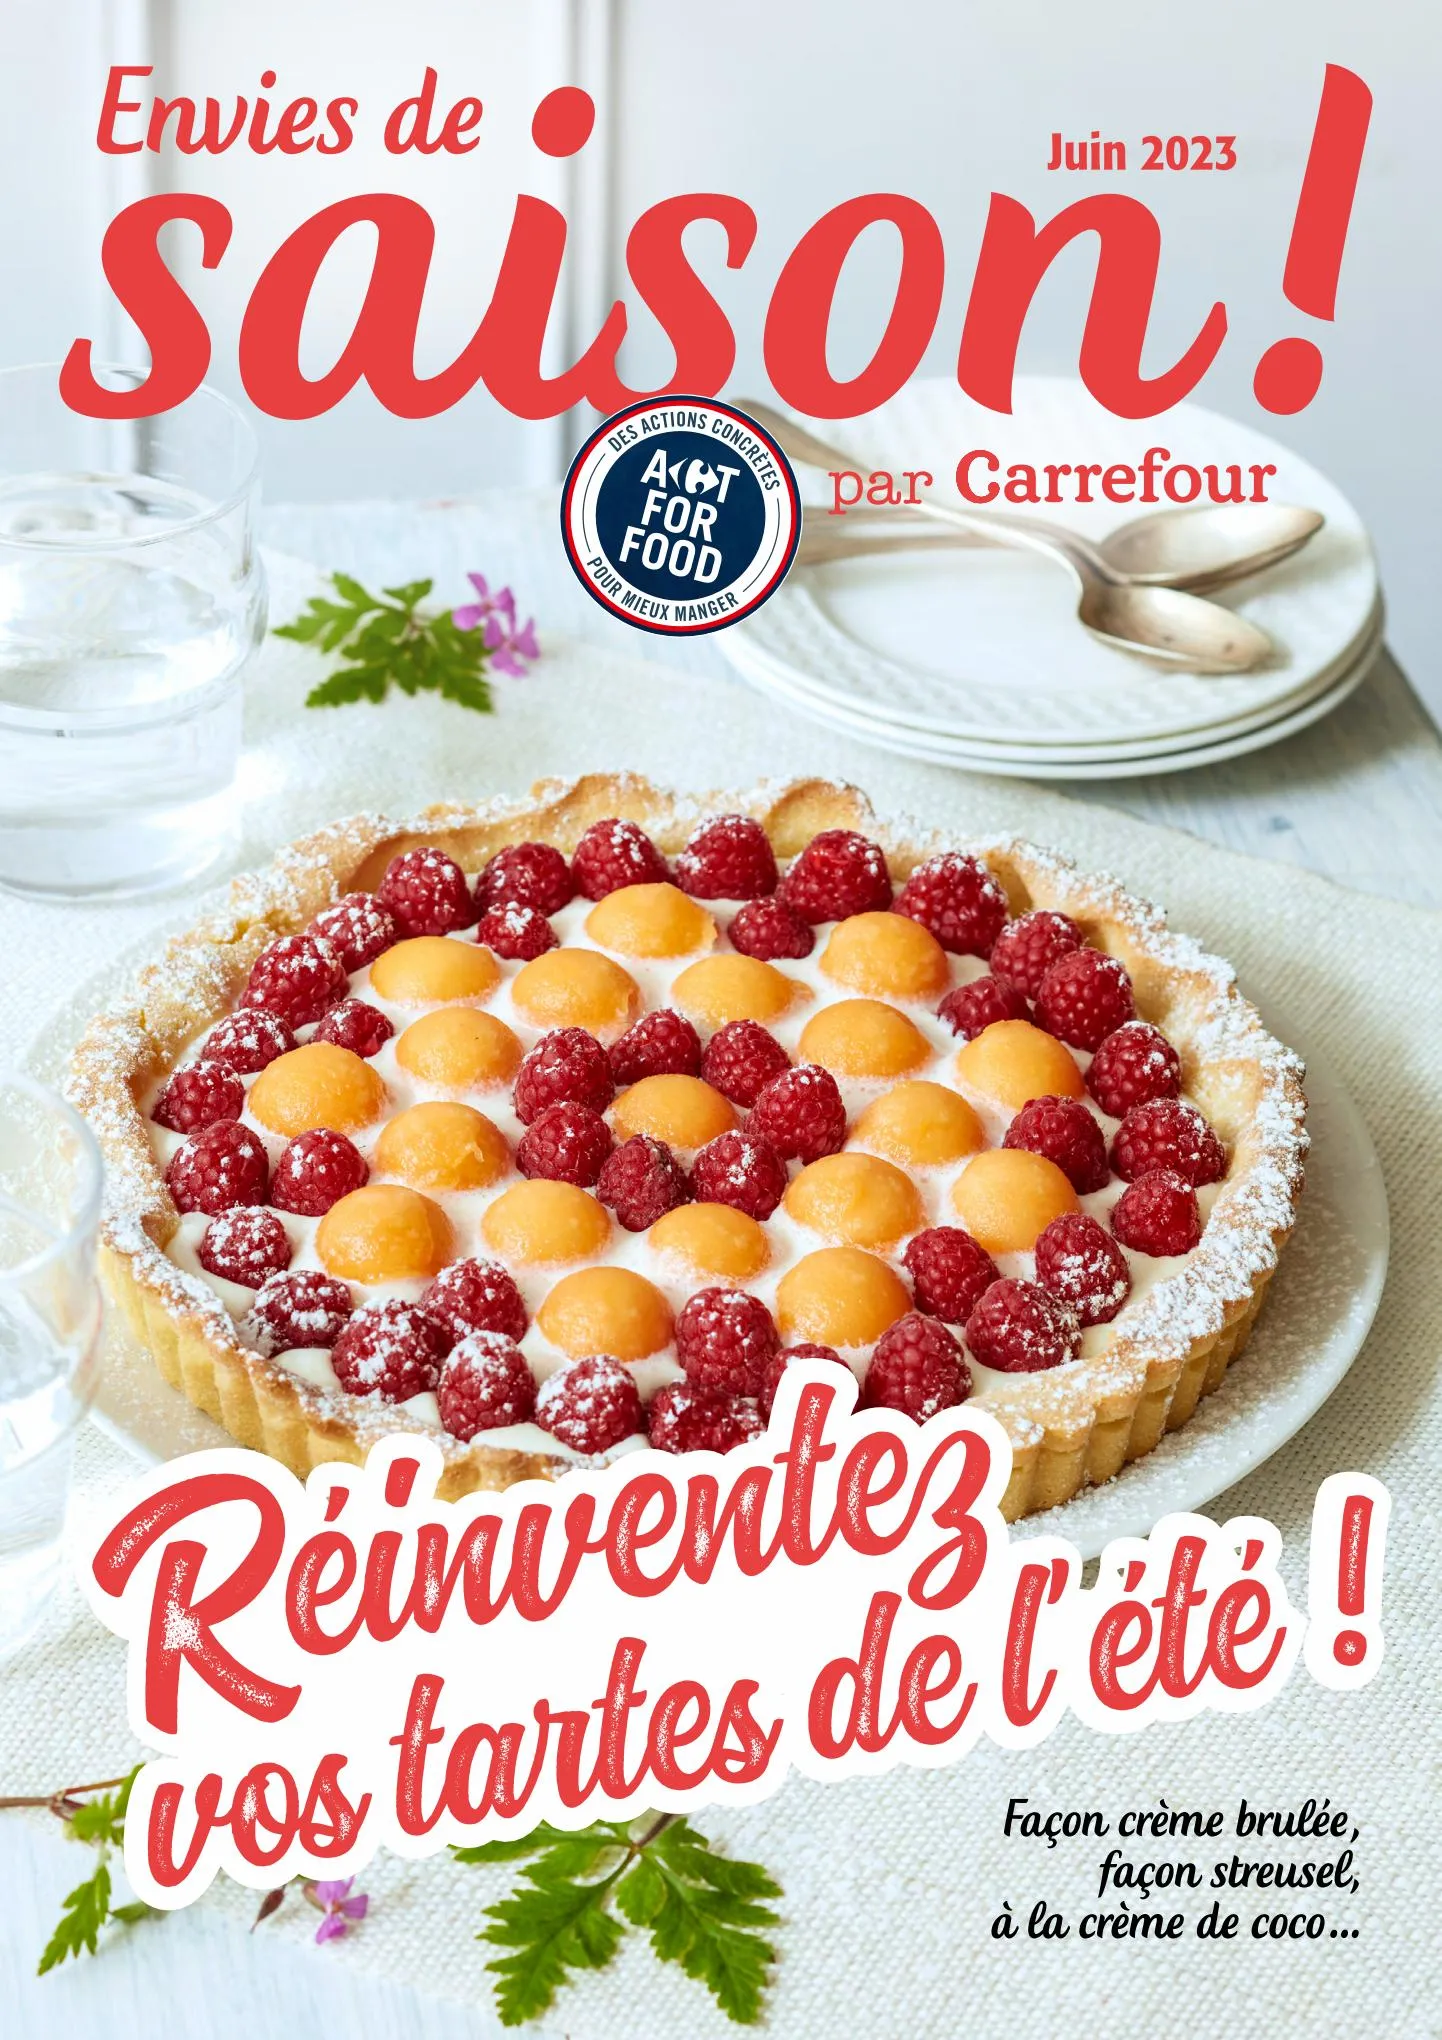 Catalogue Réinventez vos tartes !, page 00001